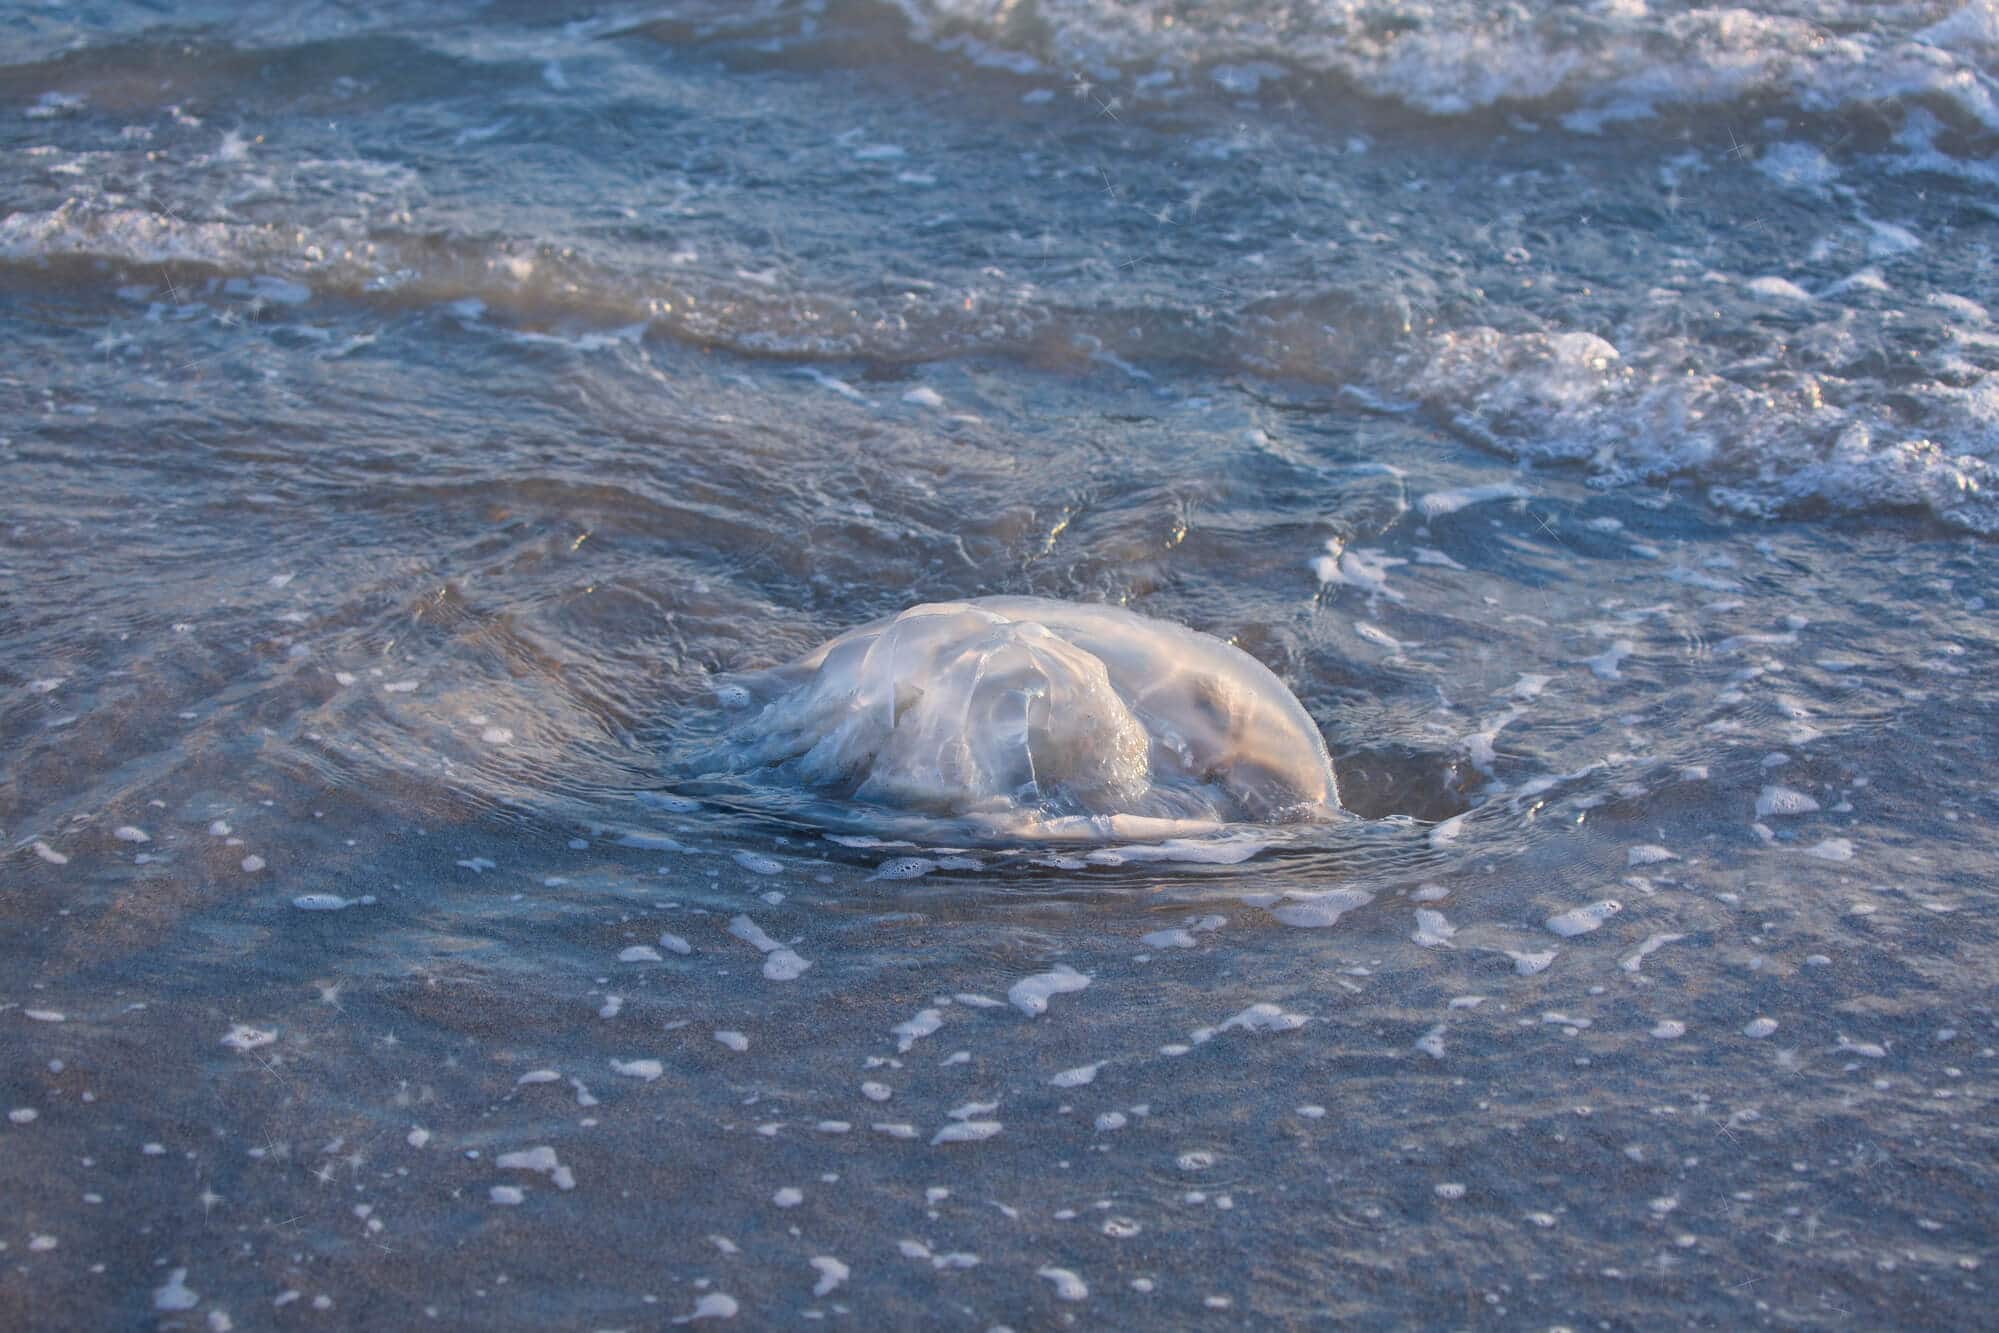 חוטית נודדת שנסחפה לחופי הים התיכון.   <a href="https://depositphotos.com. ">צילום: depositphotos.com</a>